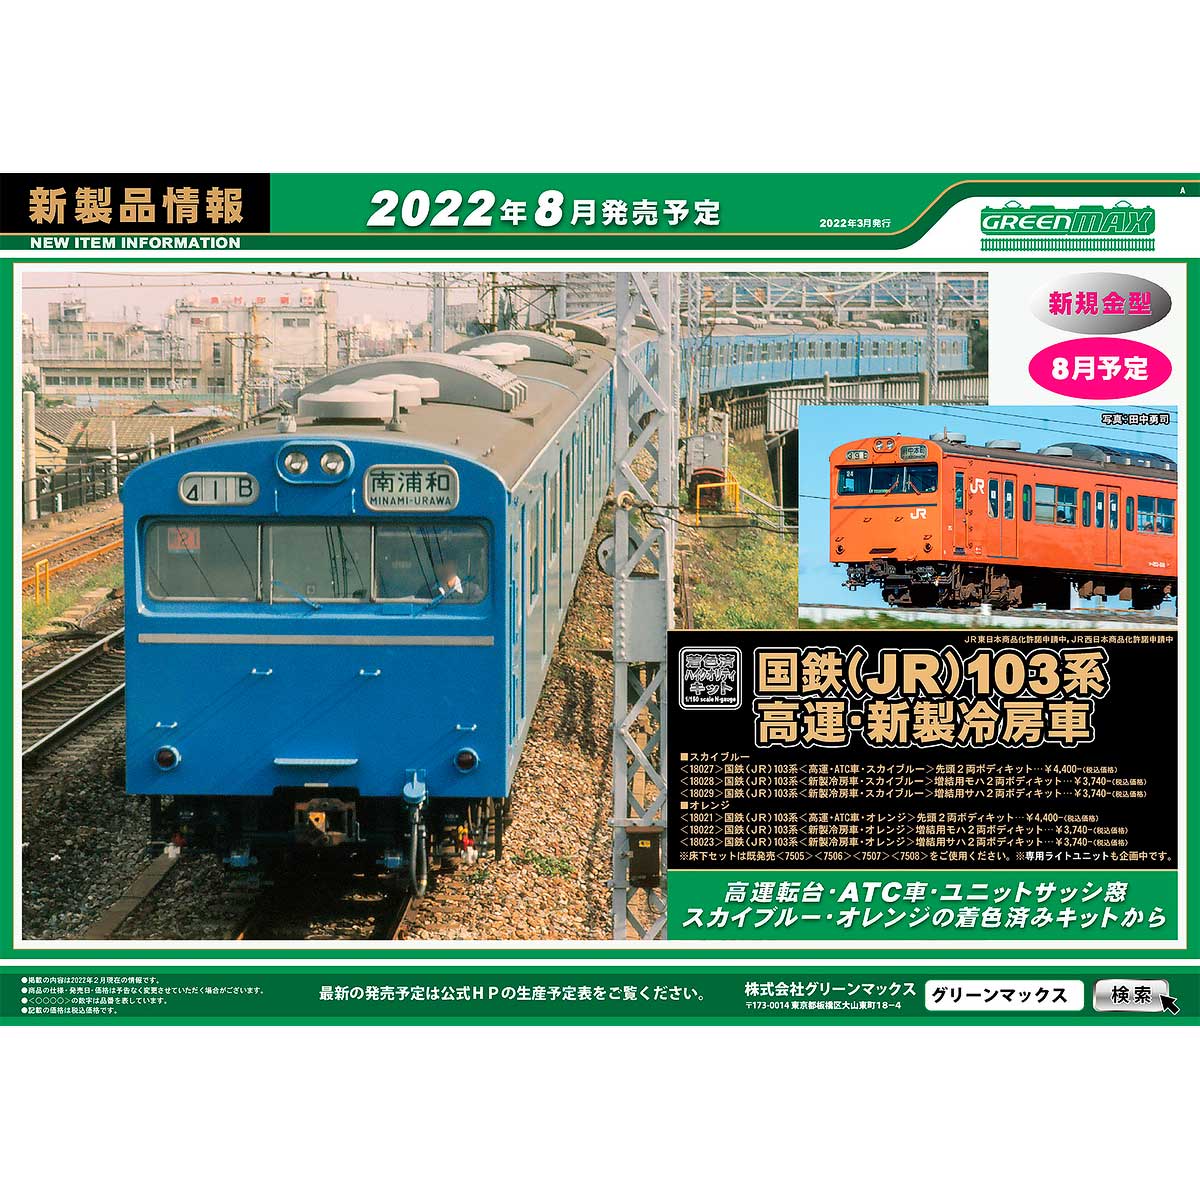 2022年3月16日発行A｜新製品情報ポスター｜Nゲージ鉄道模型のグリーンマックス